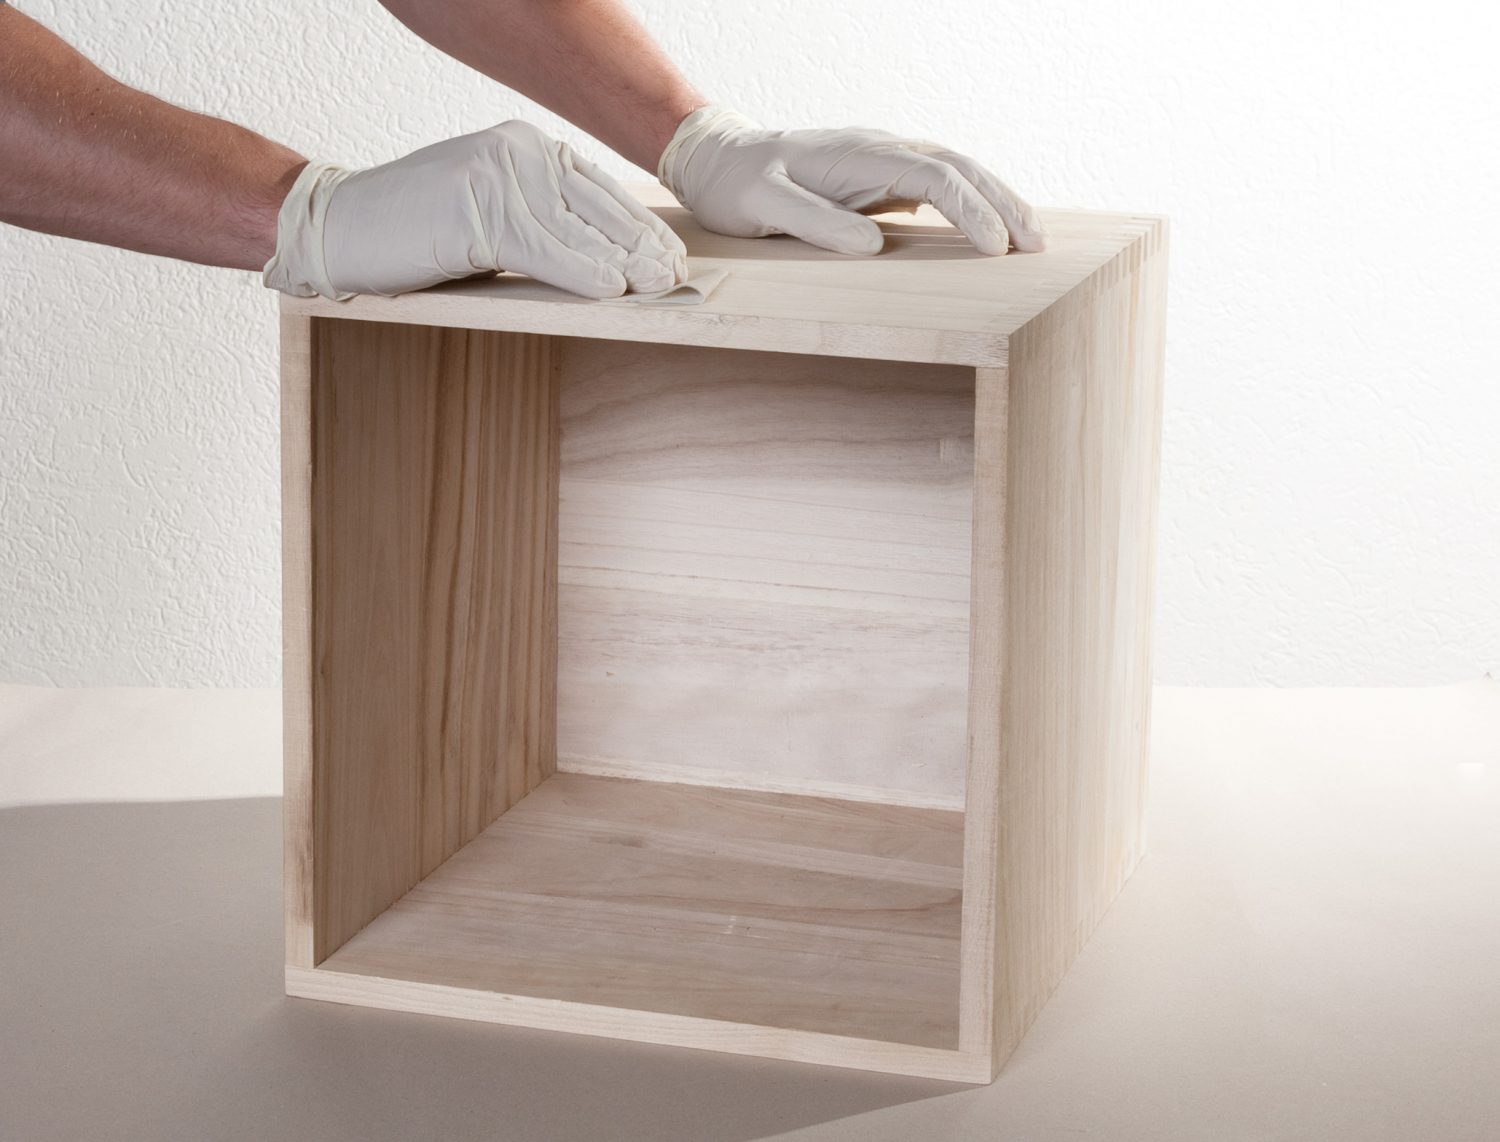 Pro dřevěné nábytkové doplňky je vosk dobrý na ošetření povrchu i drobné opravy. Foto: Shutterstock